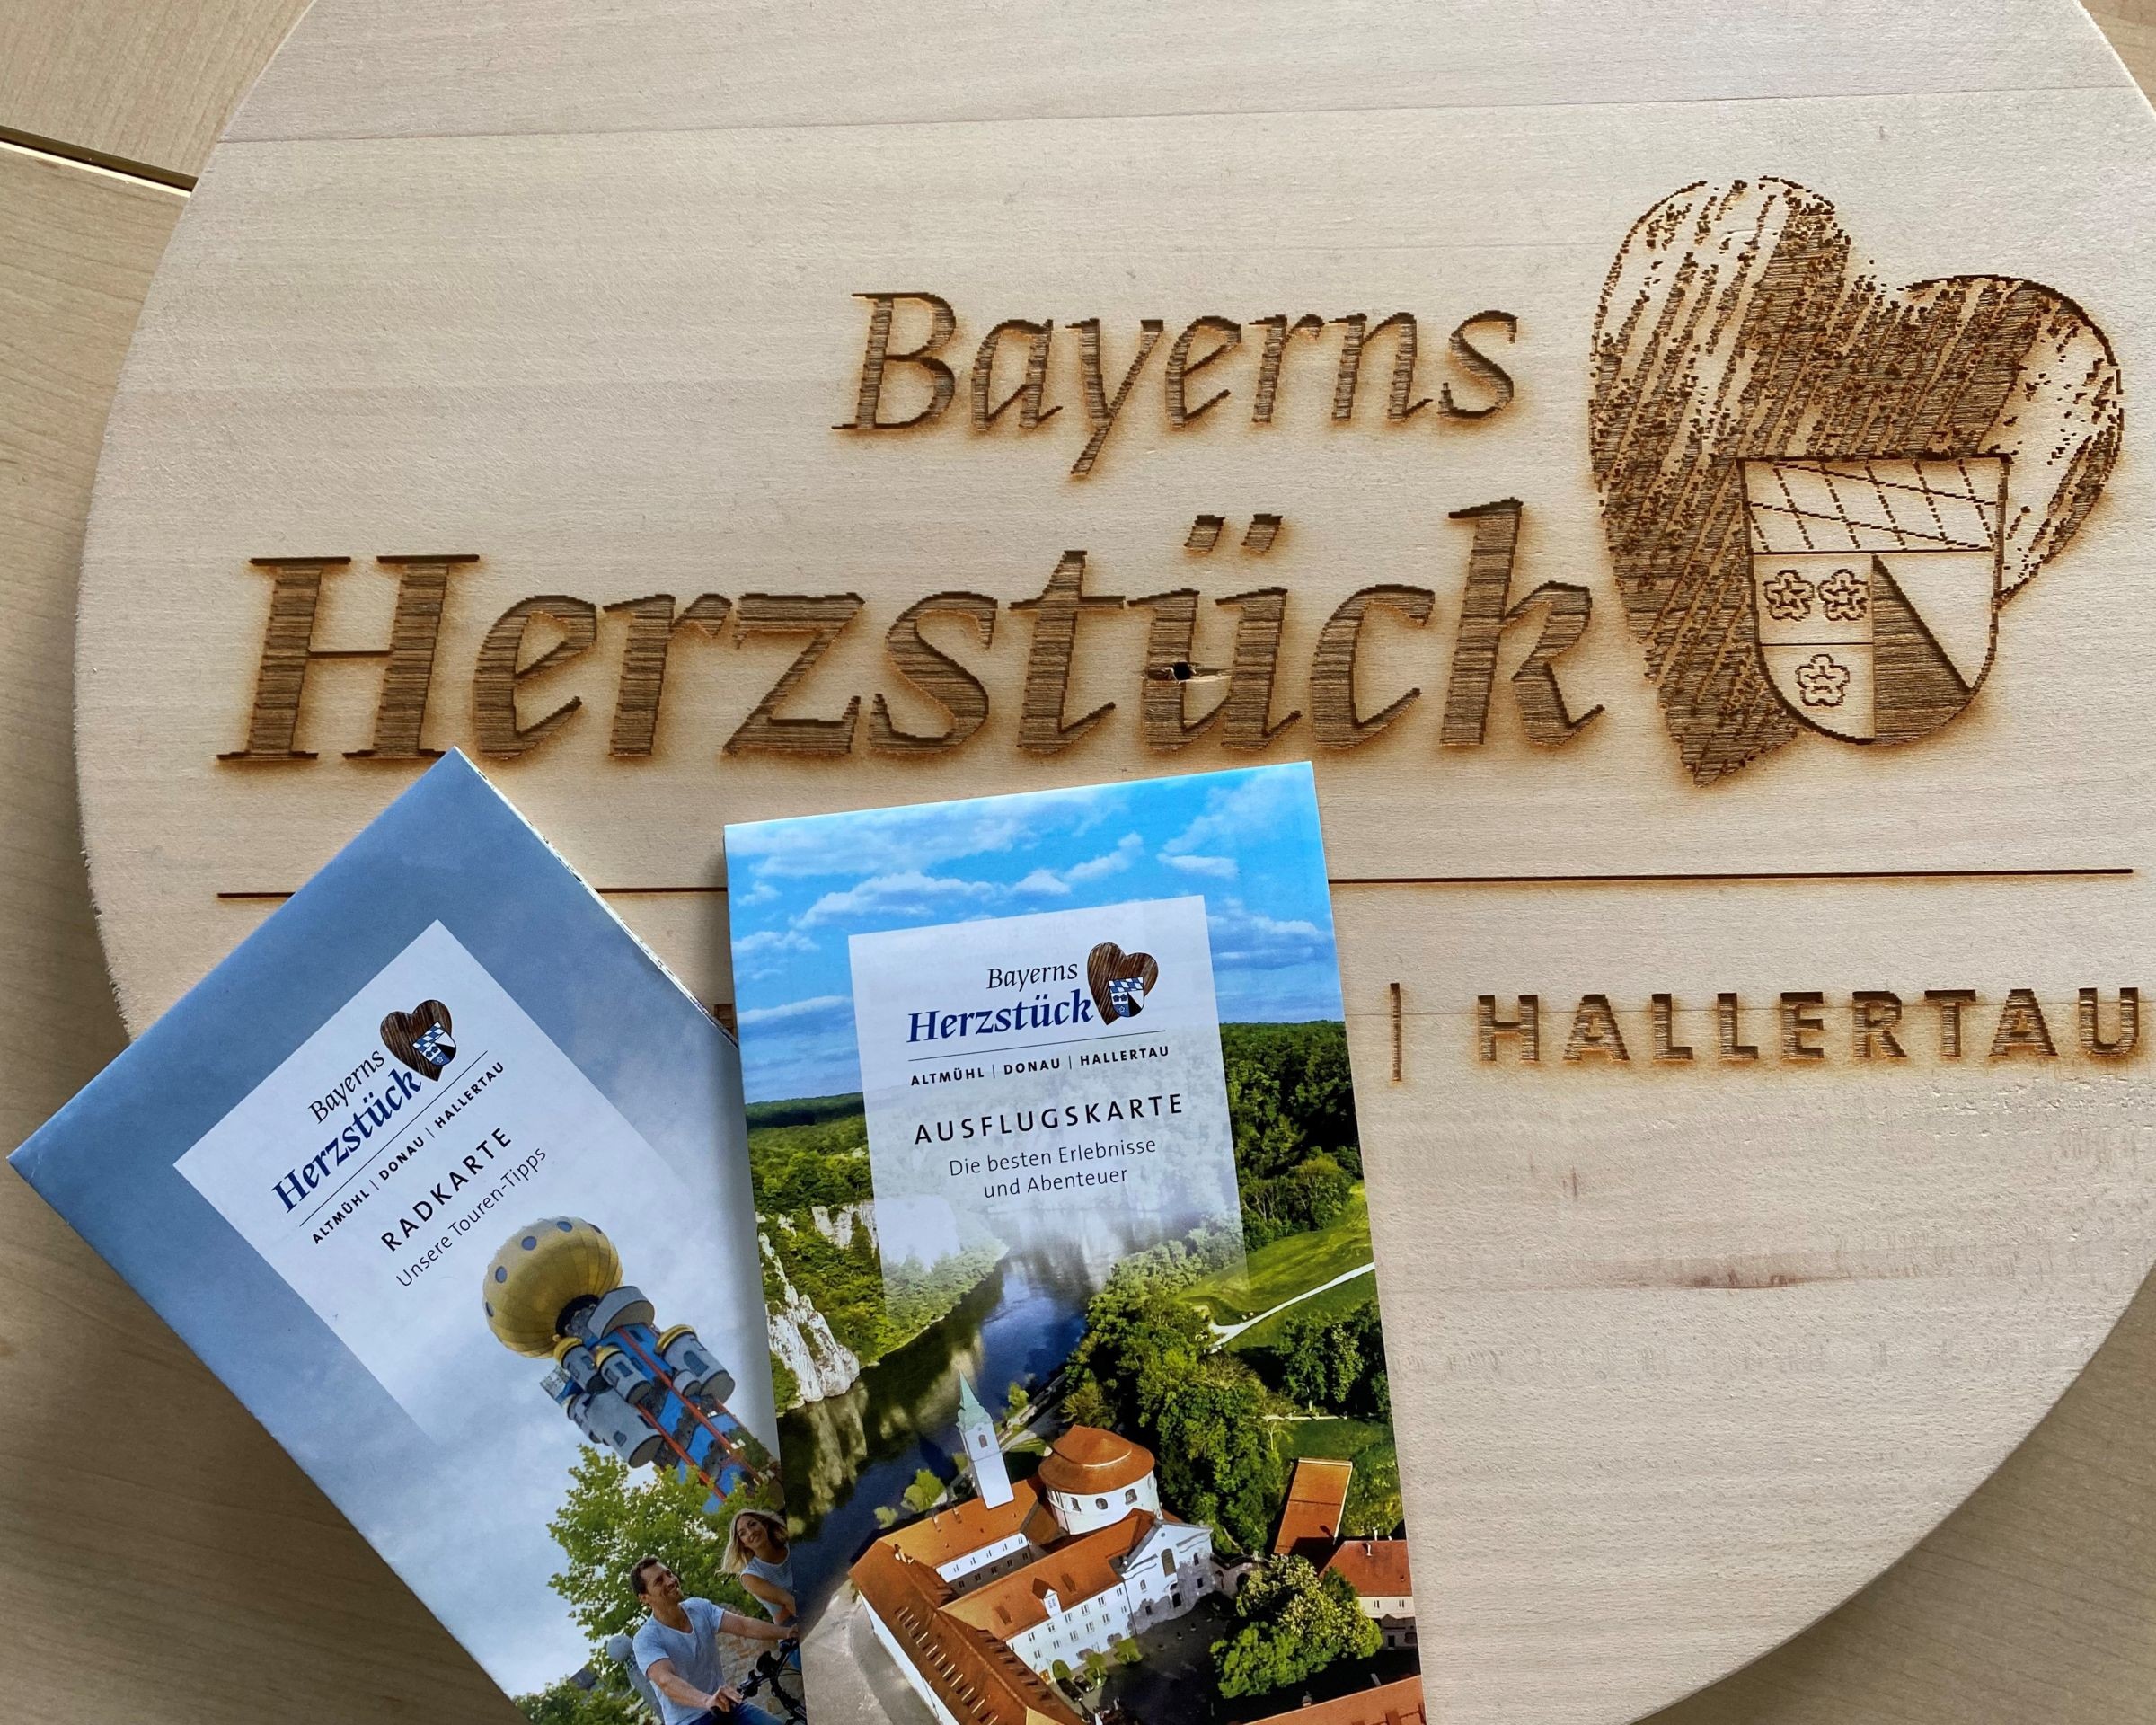 Auf einem Holzbrett mit dem Schriftzug "Bayerns Herzstück" liegen zwei Prospekte der Urlaubsregion Kelheim.